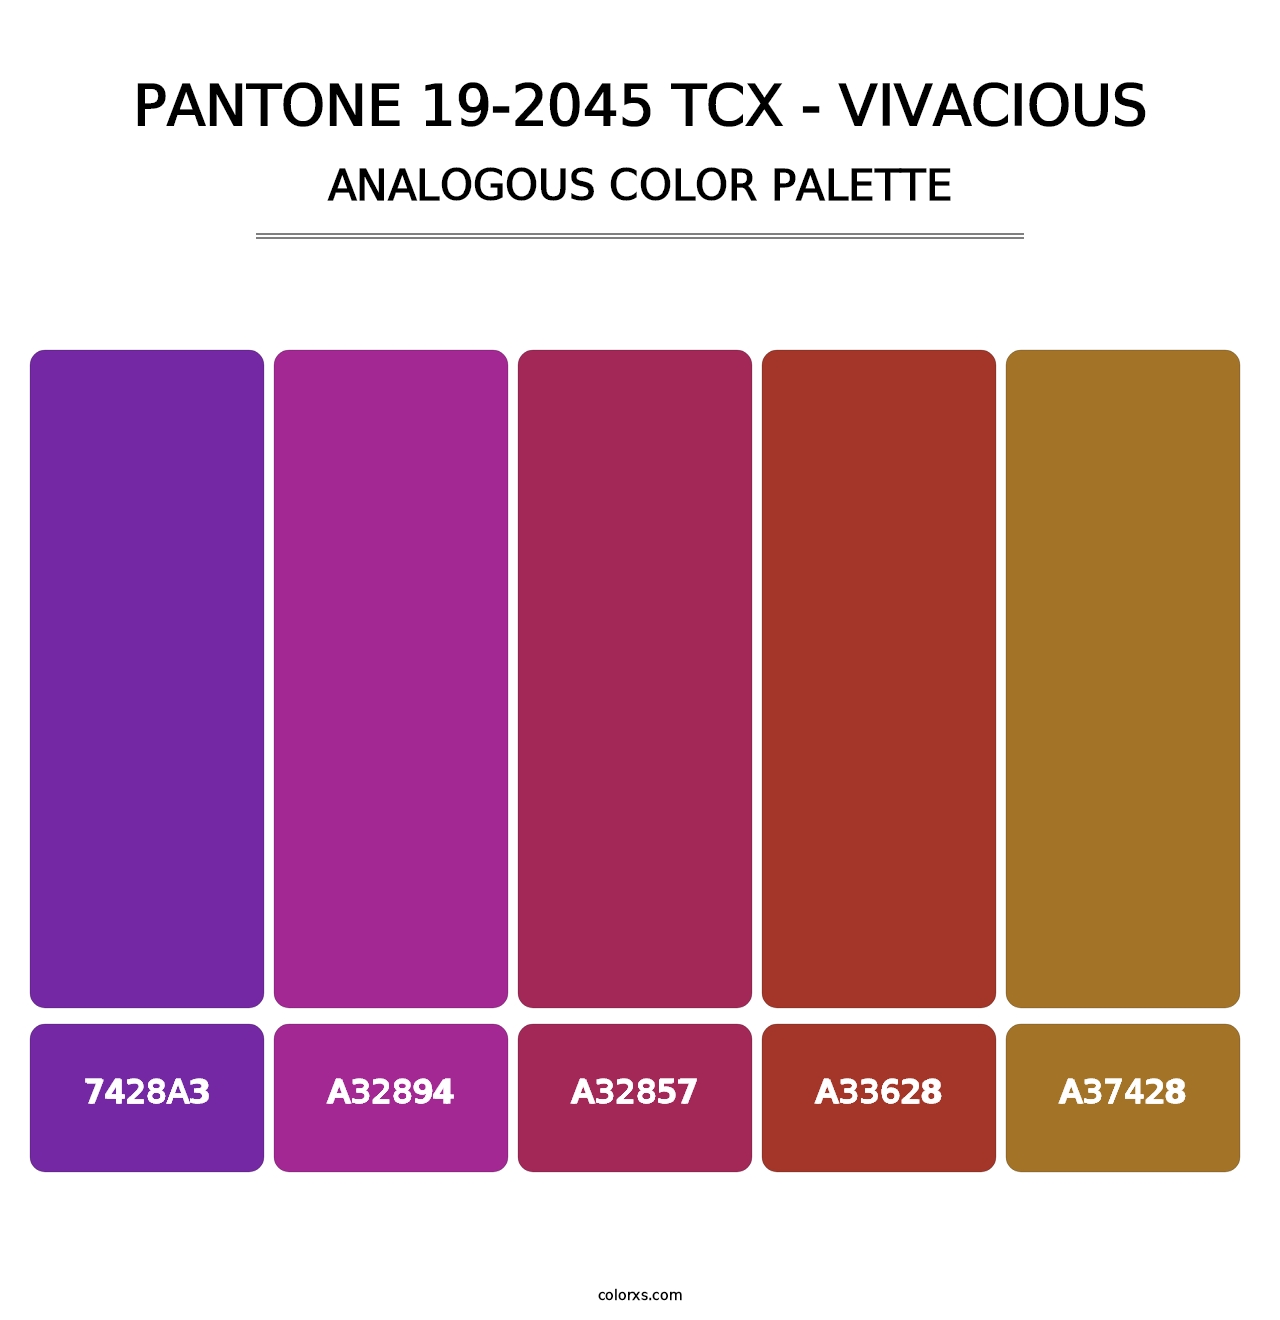 PANTONE 19-2045 TCX - Vivacious - Analogous Color Palette